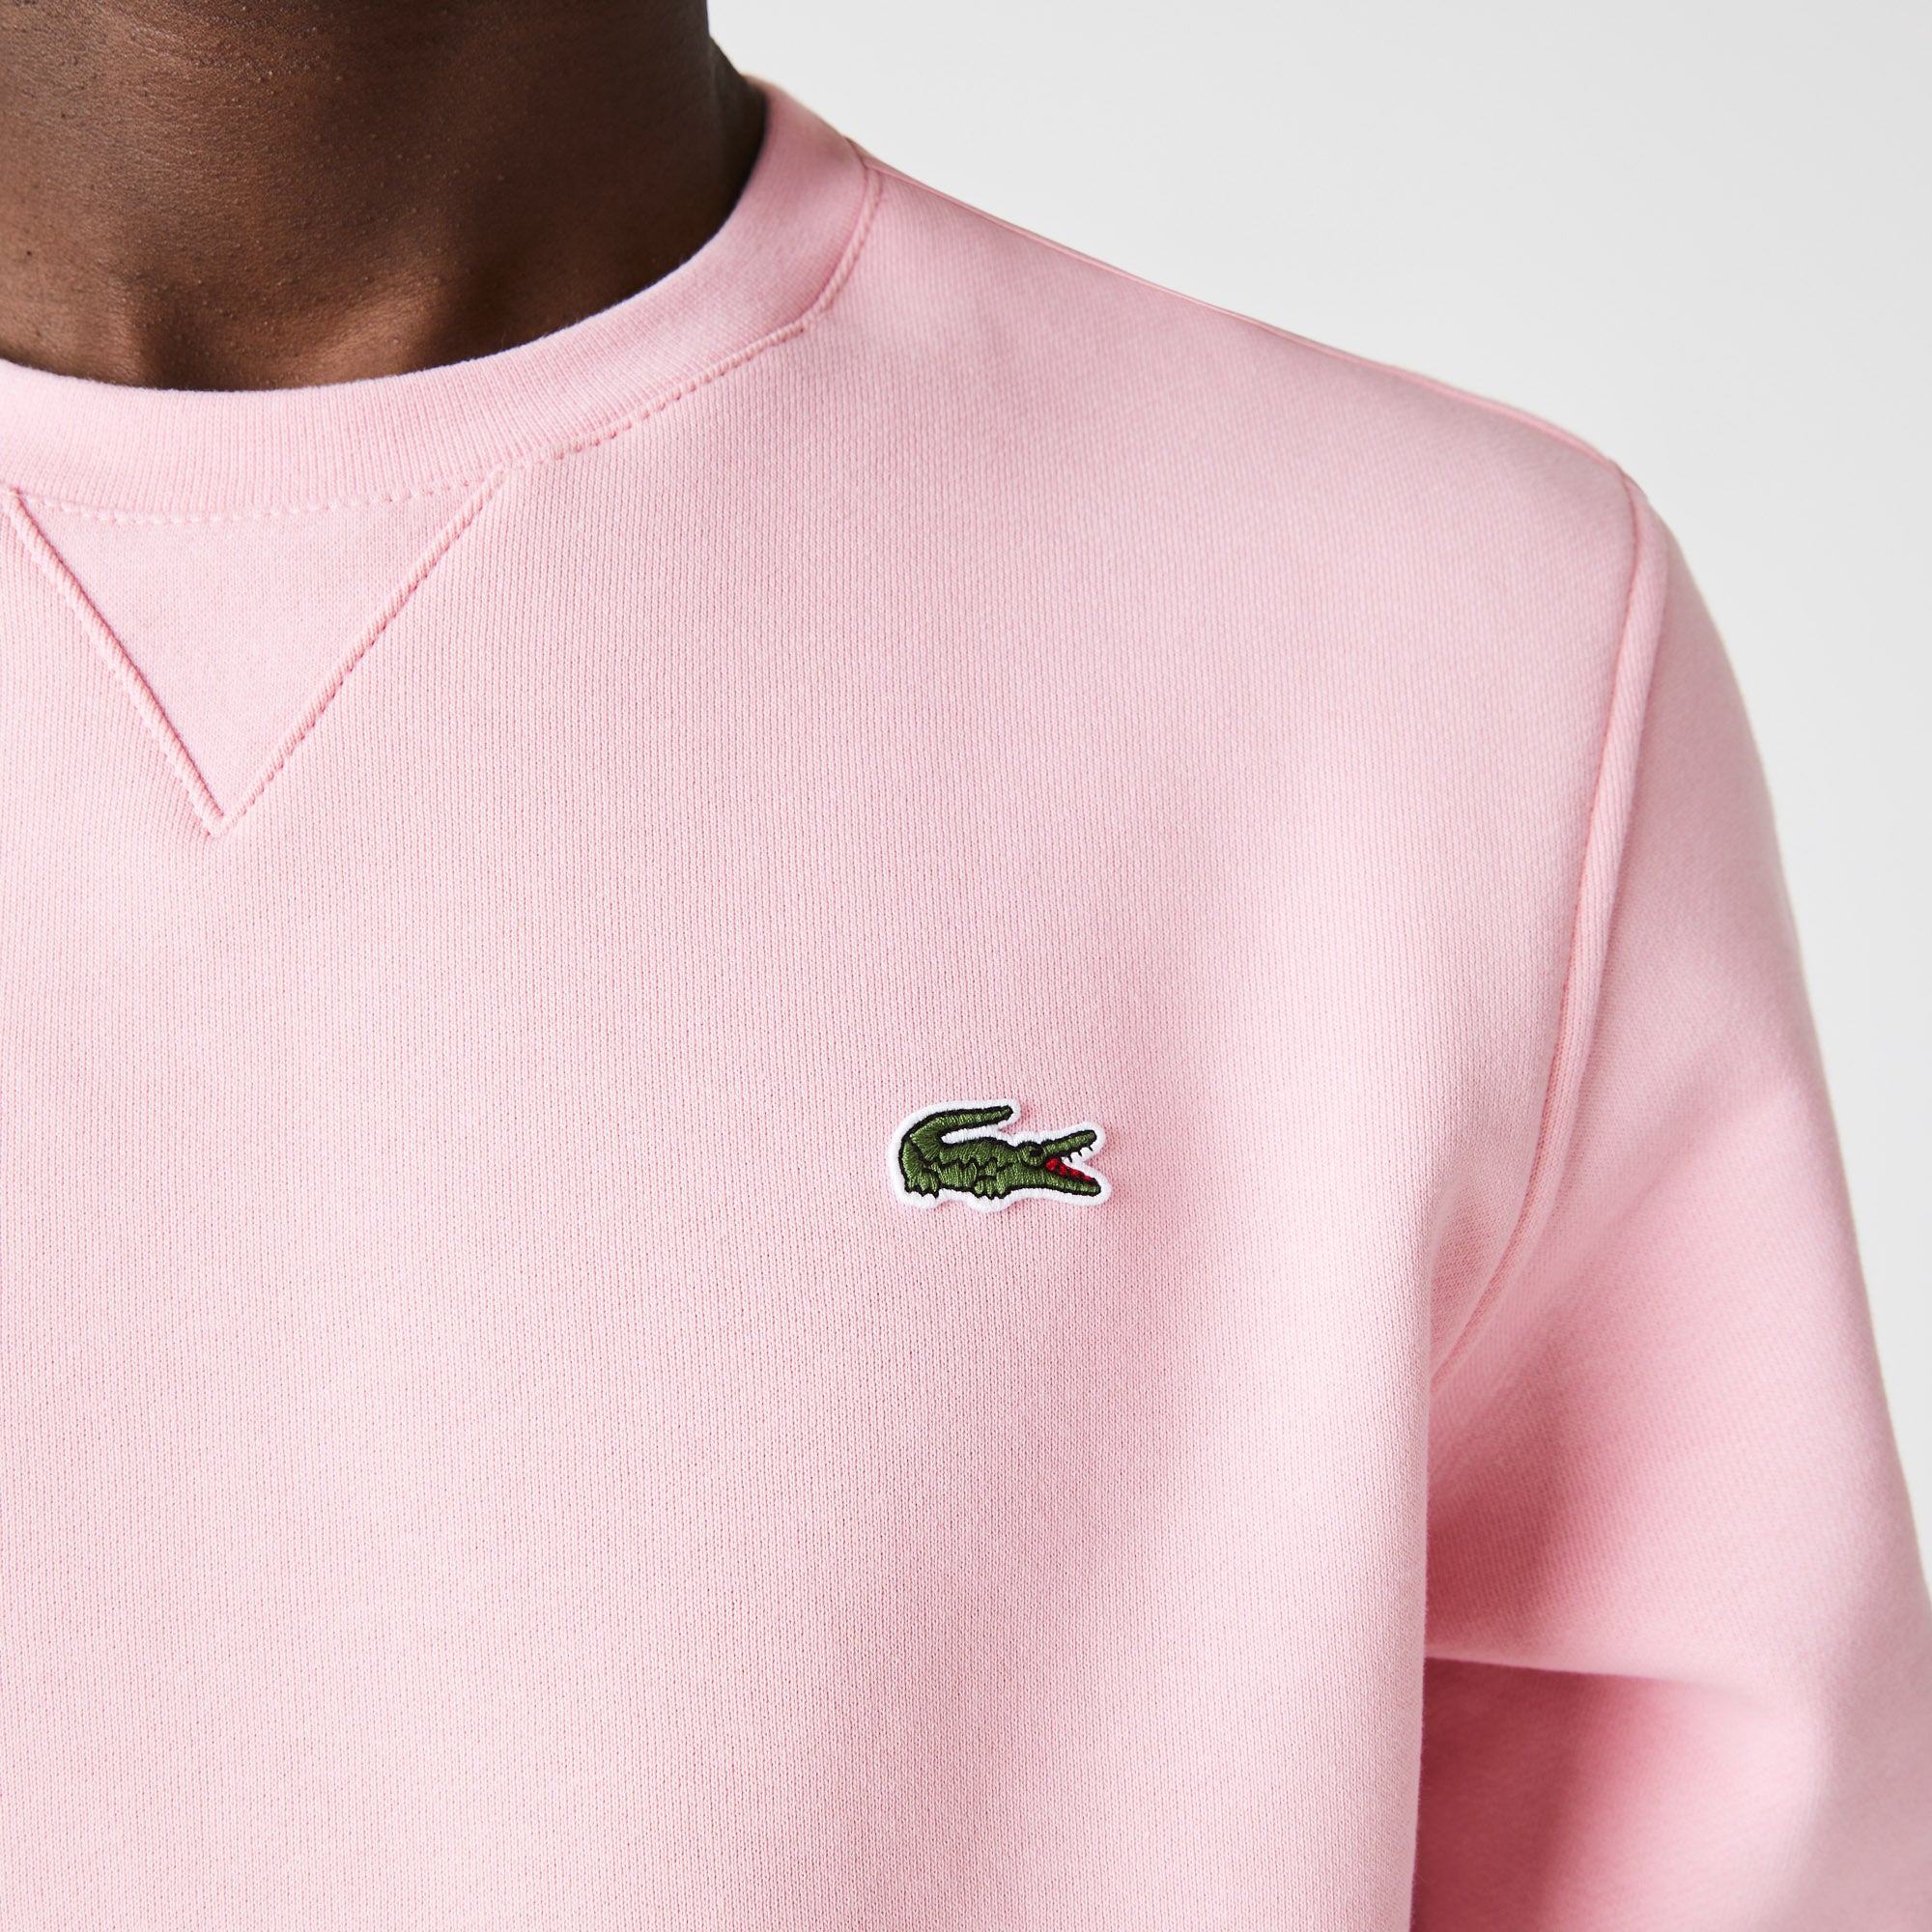 overfladisk Pounding Afskrække Lacoste Cotton Fleece Sweatshirt Pink SH1505AUU | Chicago City Sports